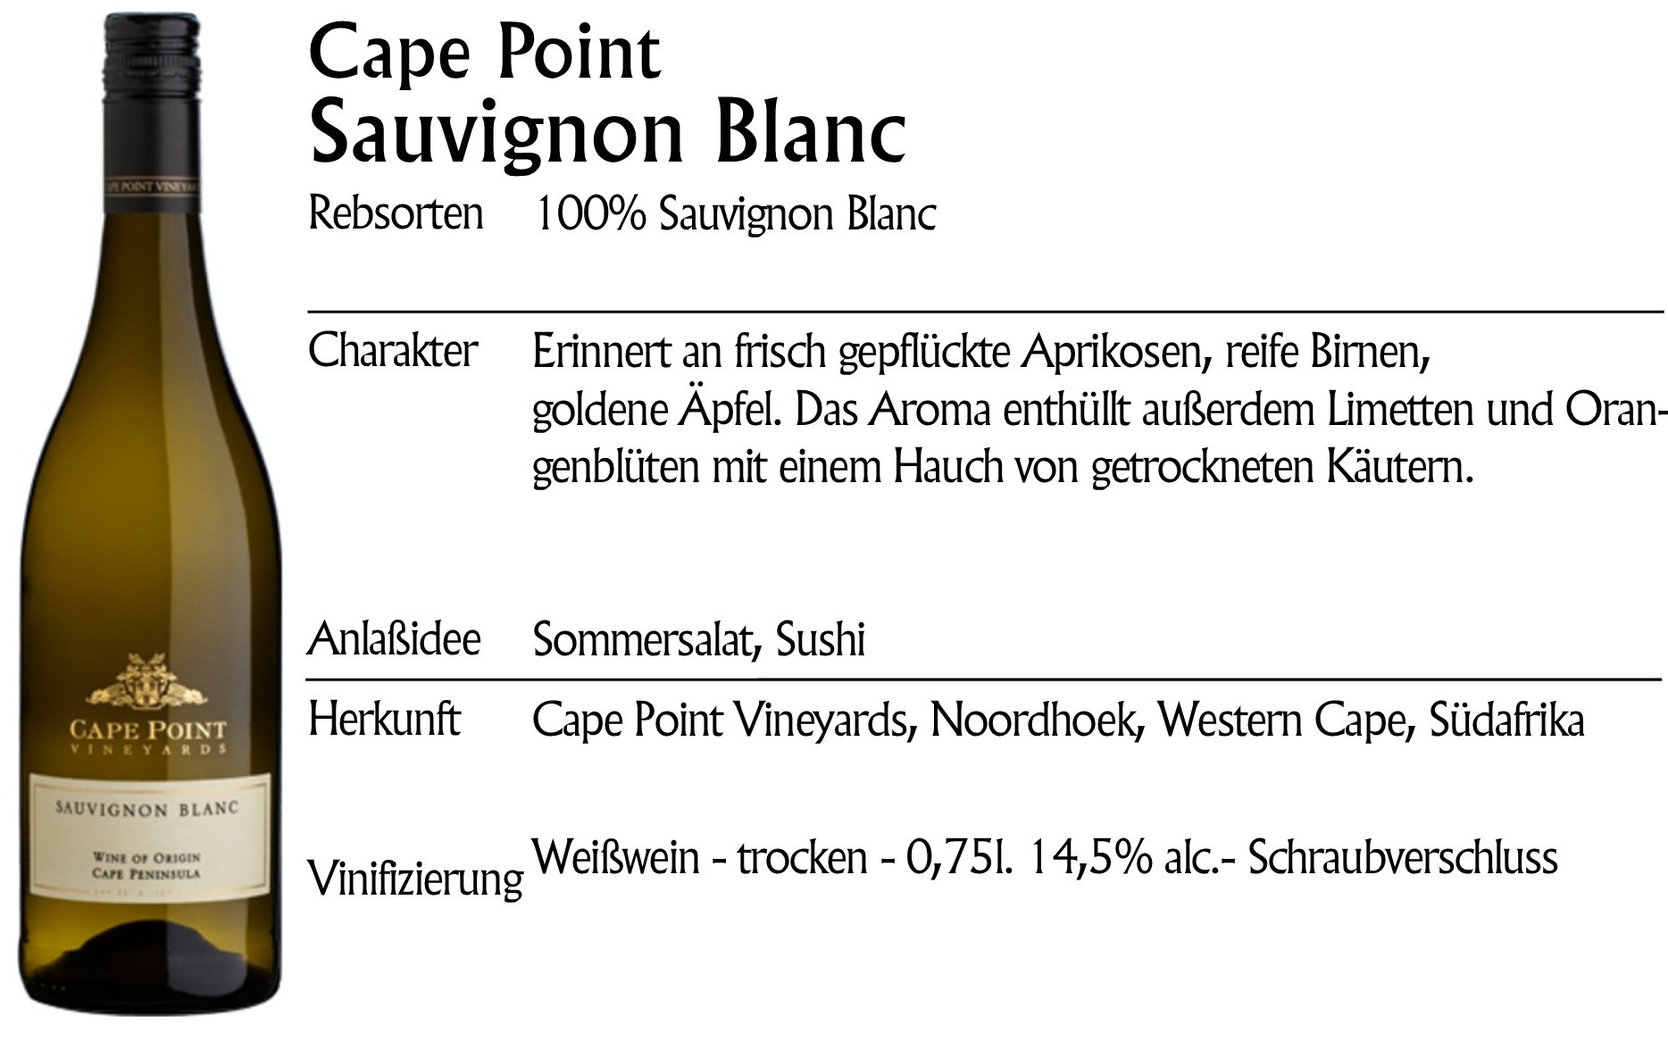 Cape Point Sauvignon Blanc 2020